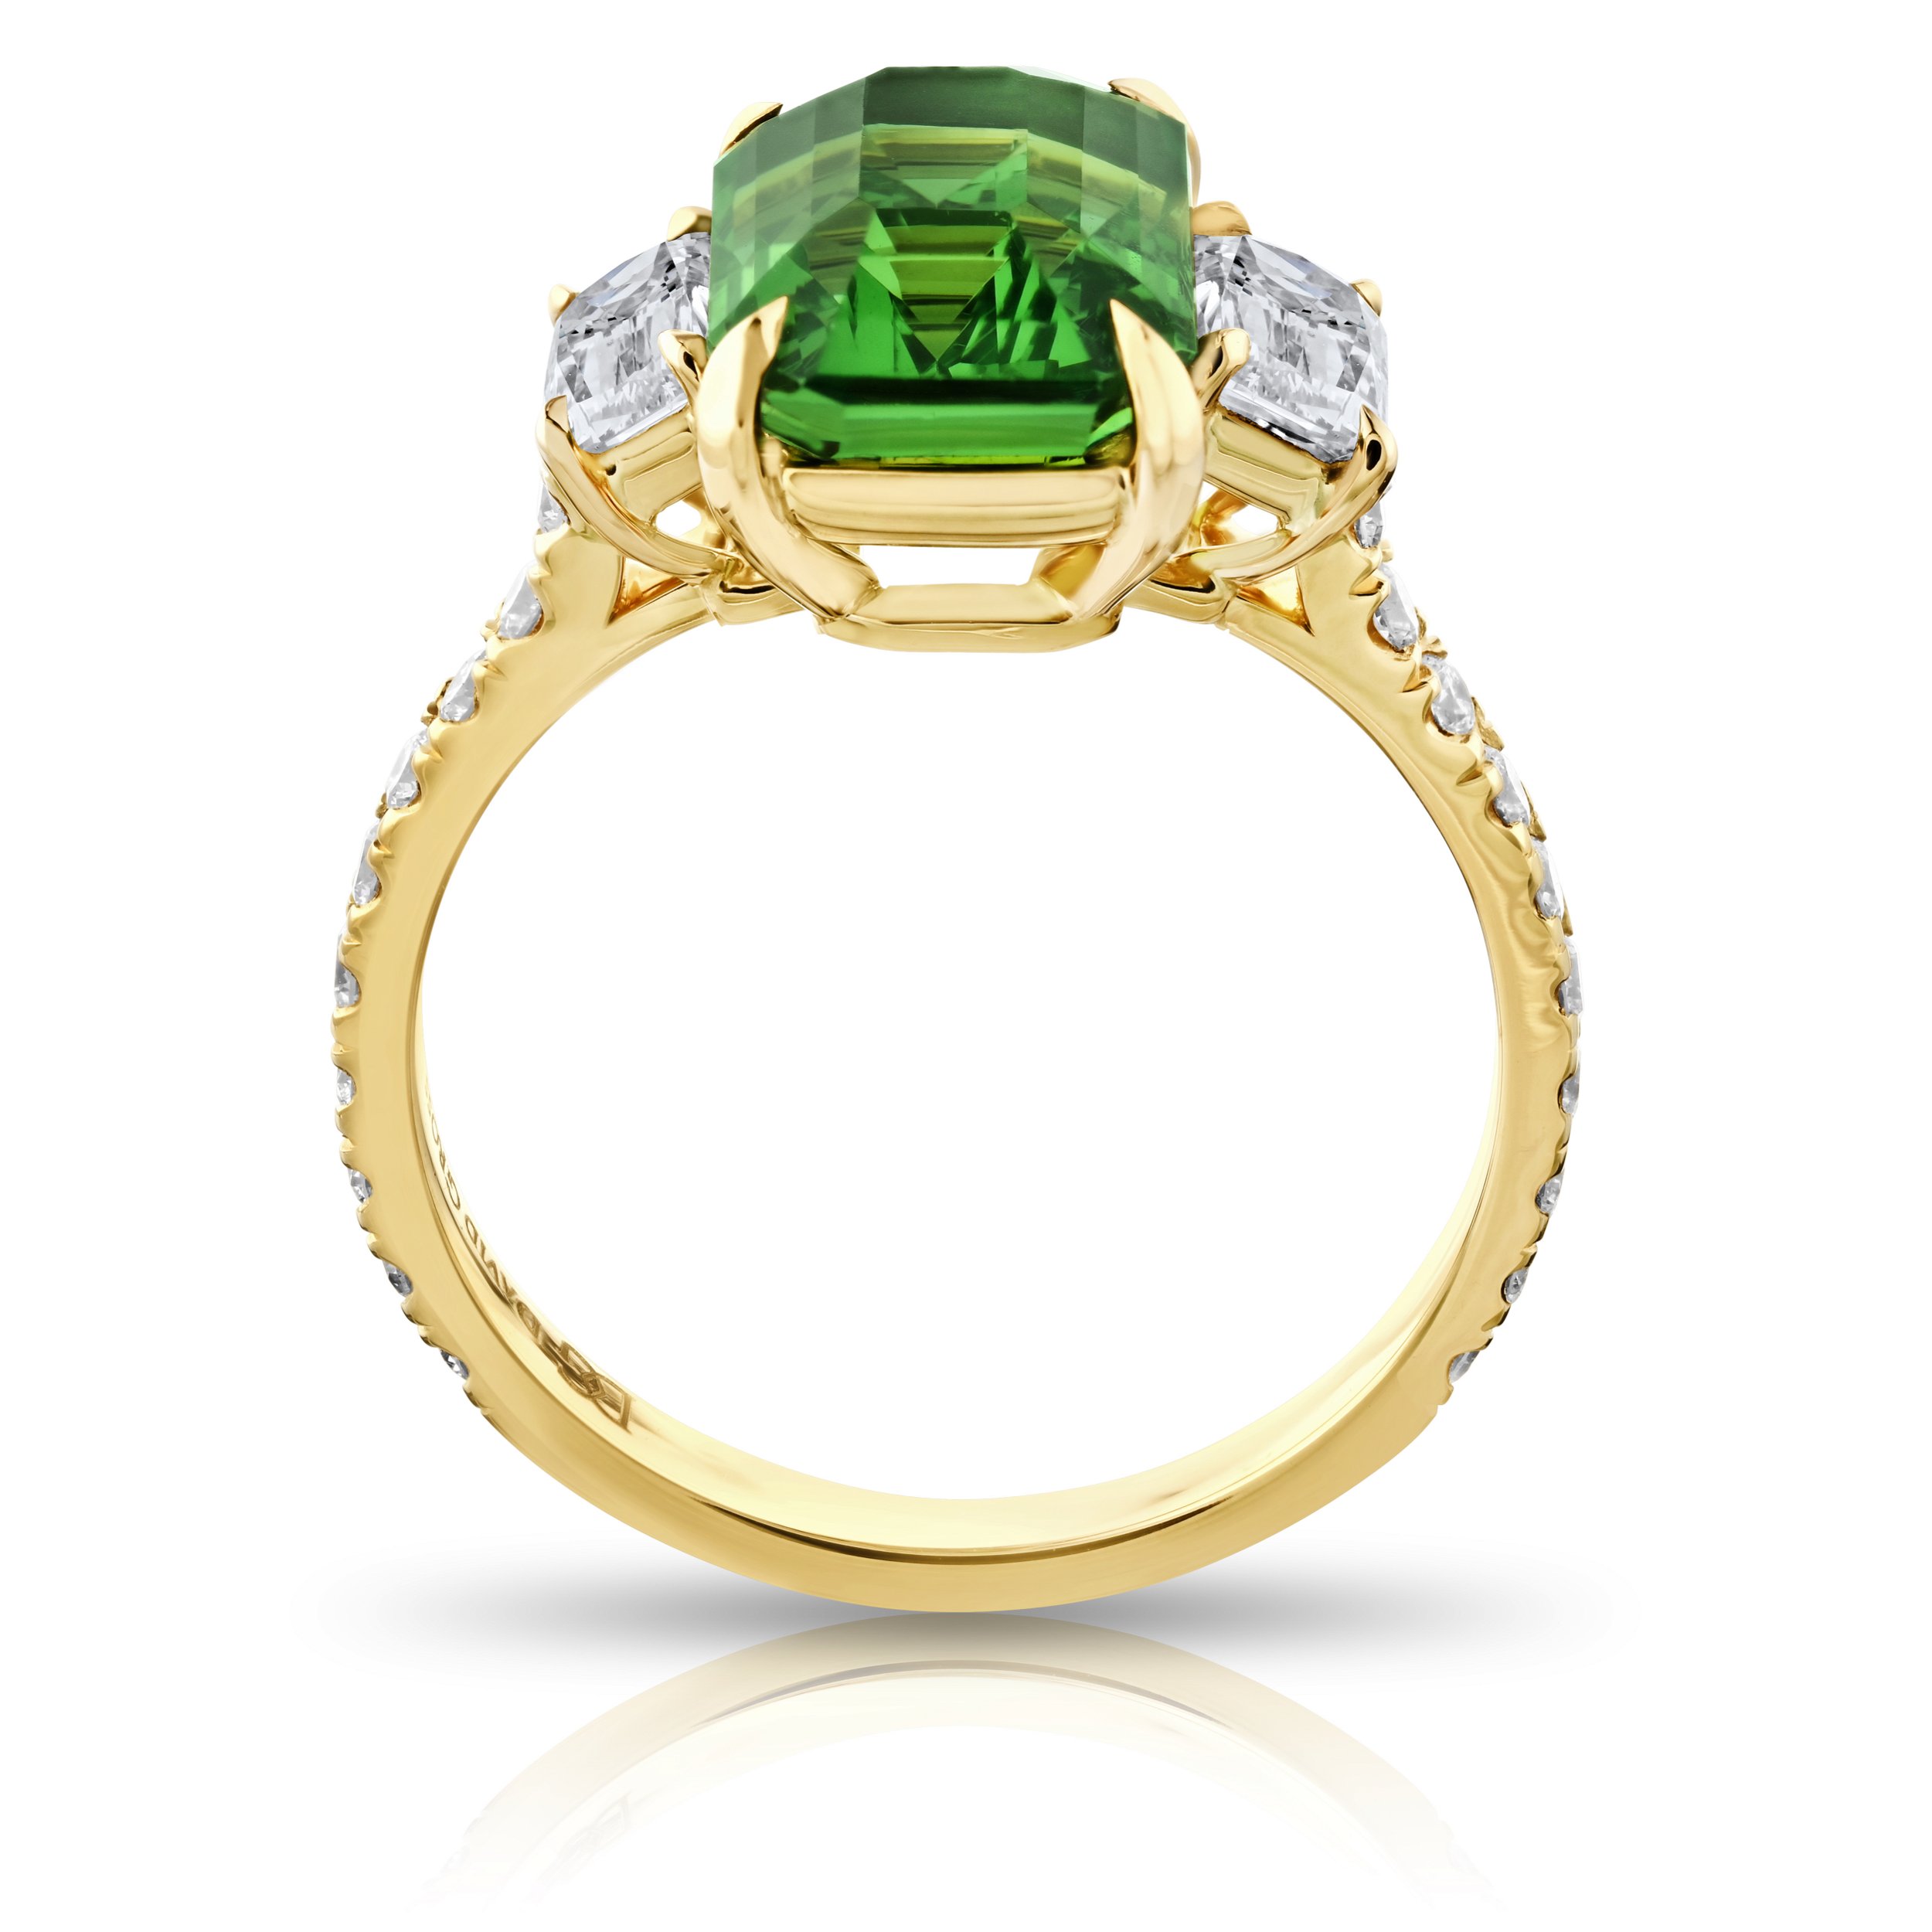 4.02ct Emerald Cut Tsavorite and Antique Cushion Cut Diamond Ring